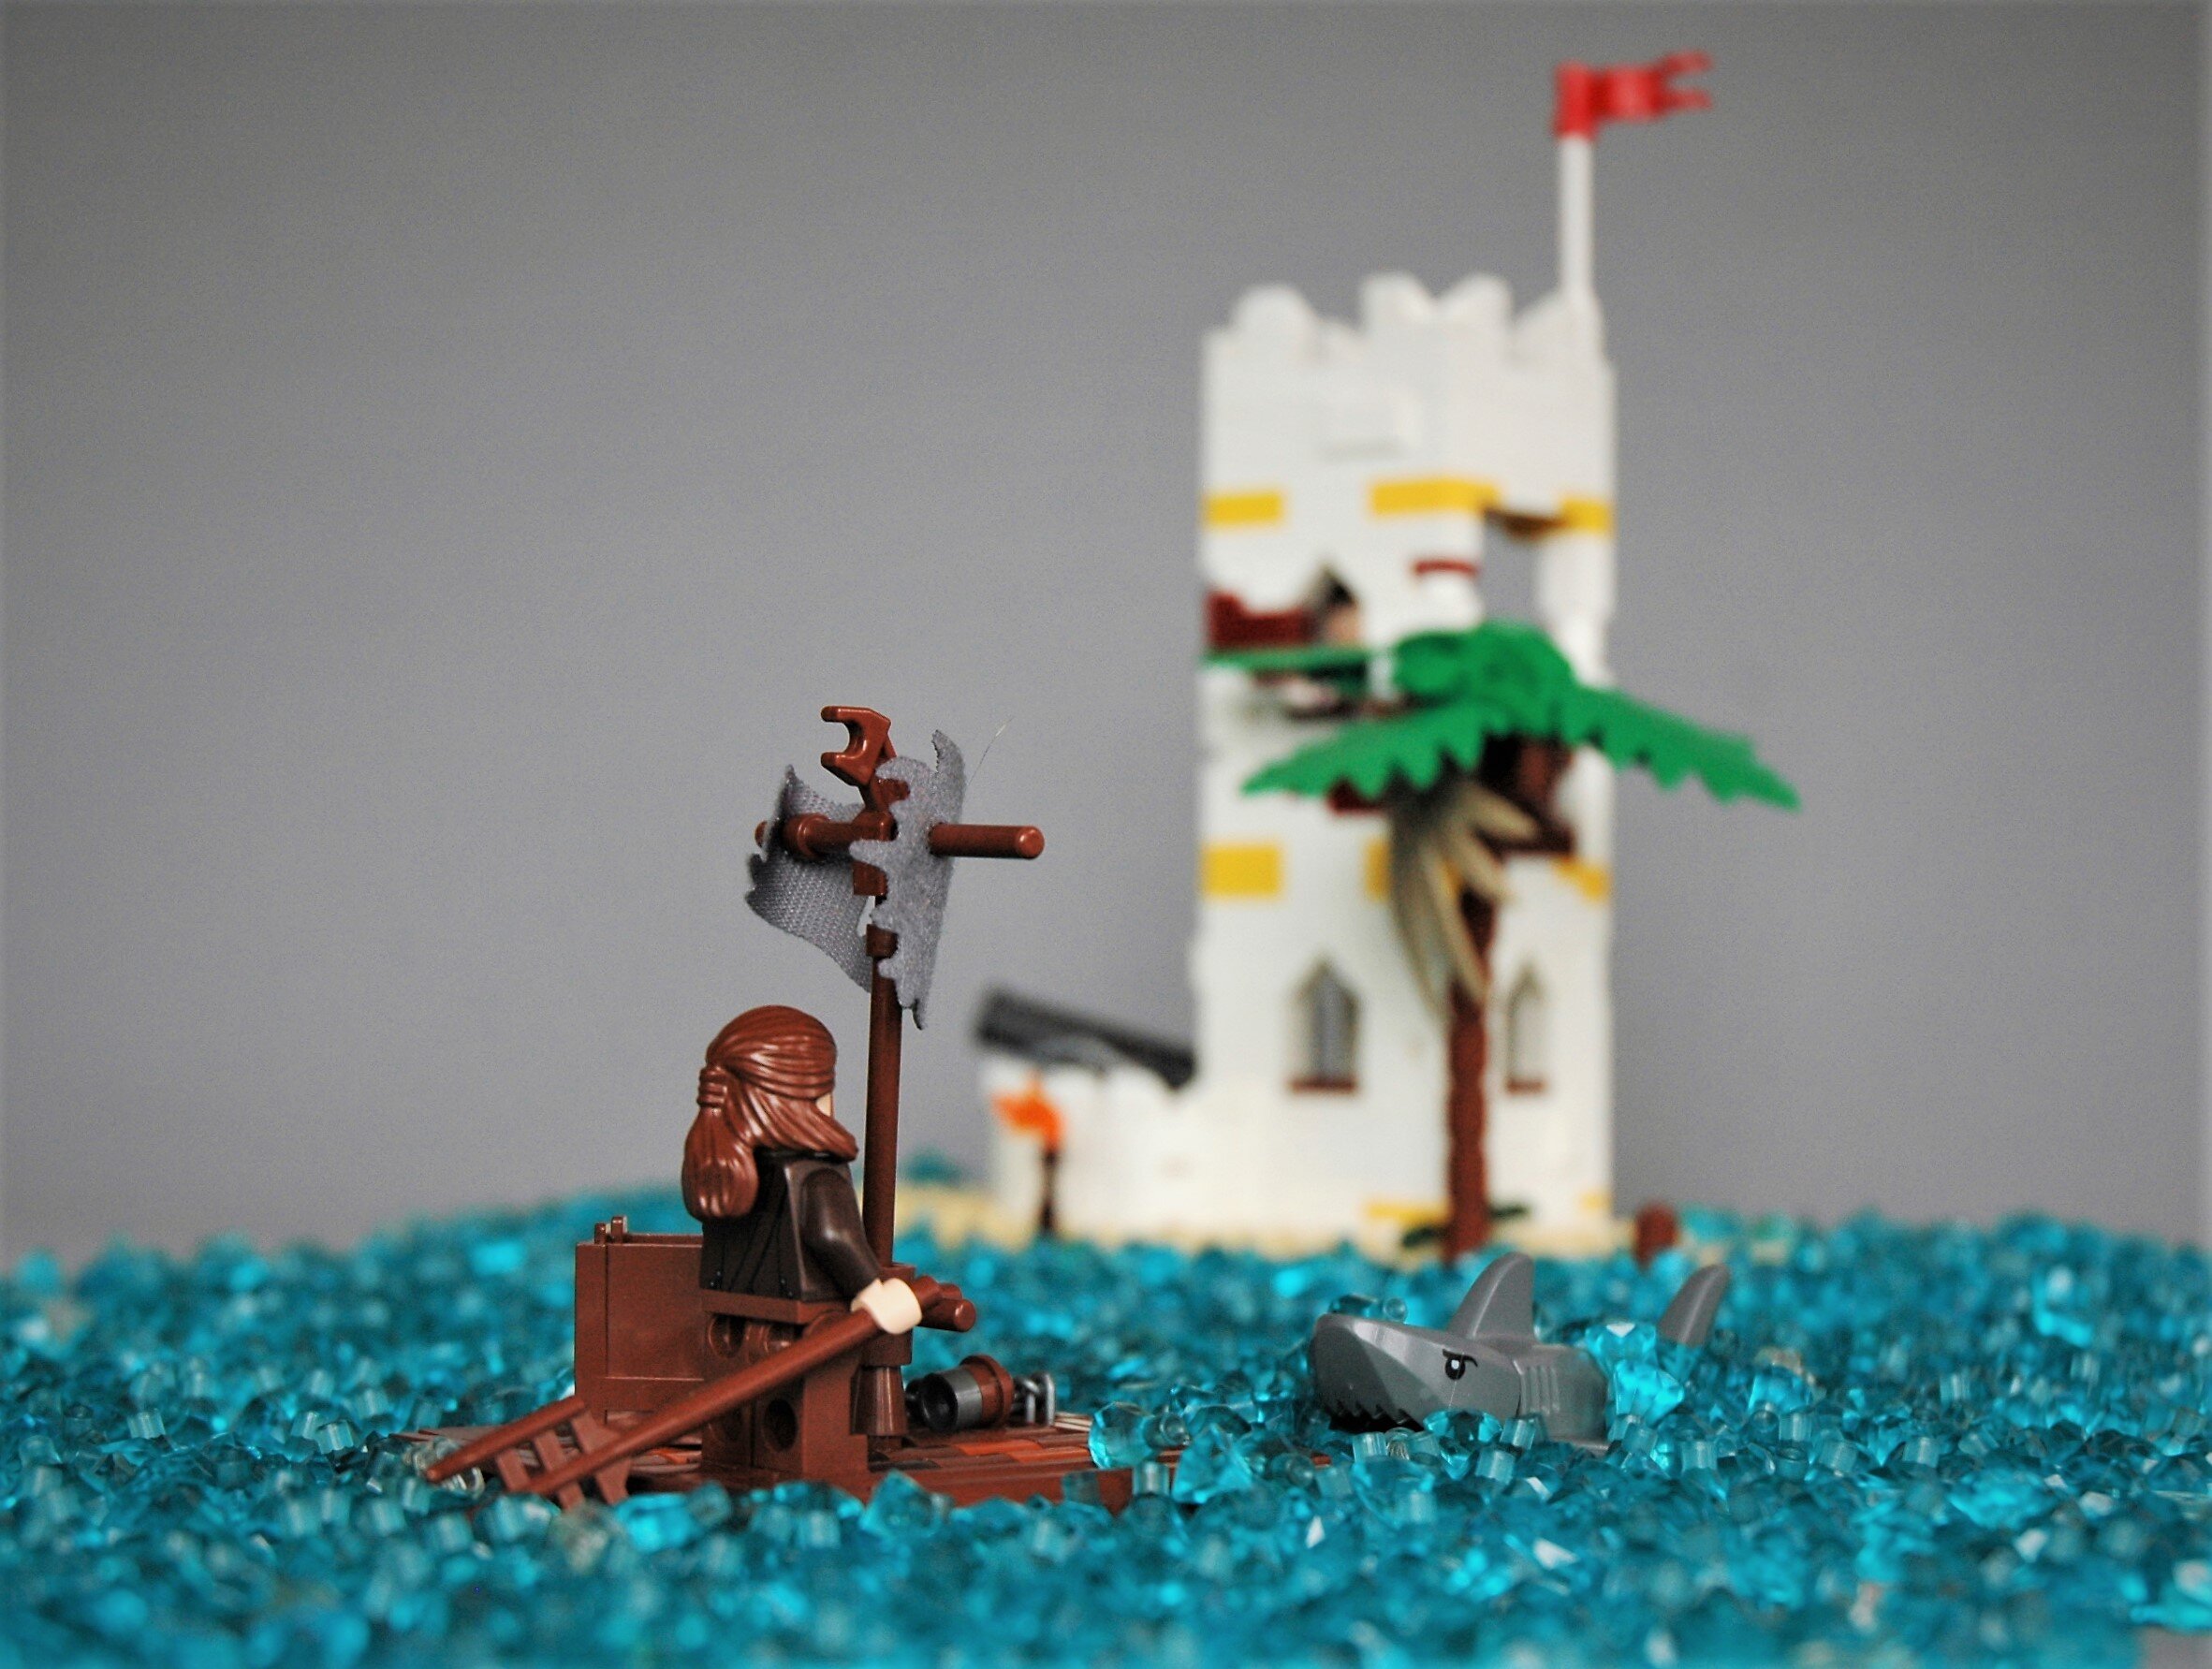 LEGO IDEAS - Land Ahoy